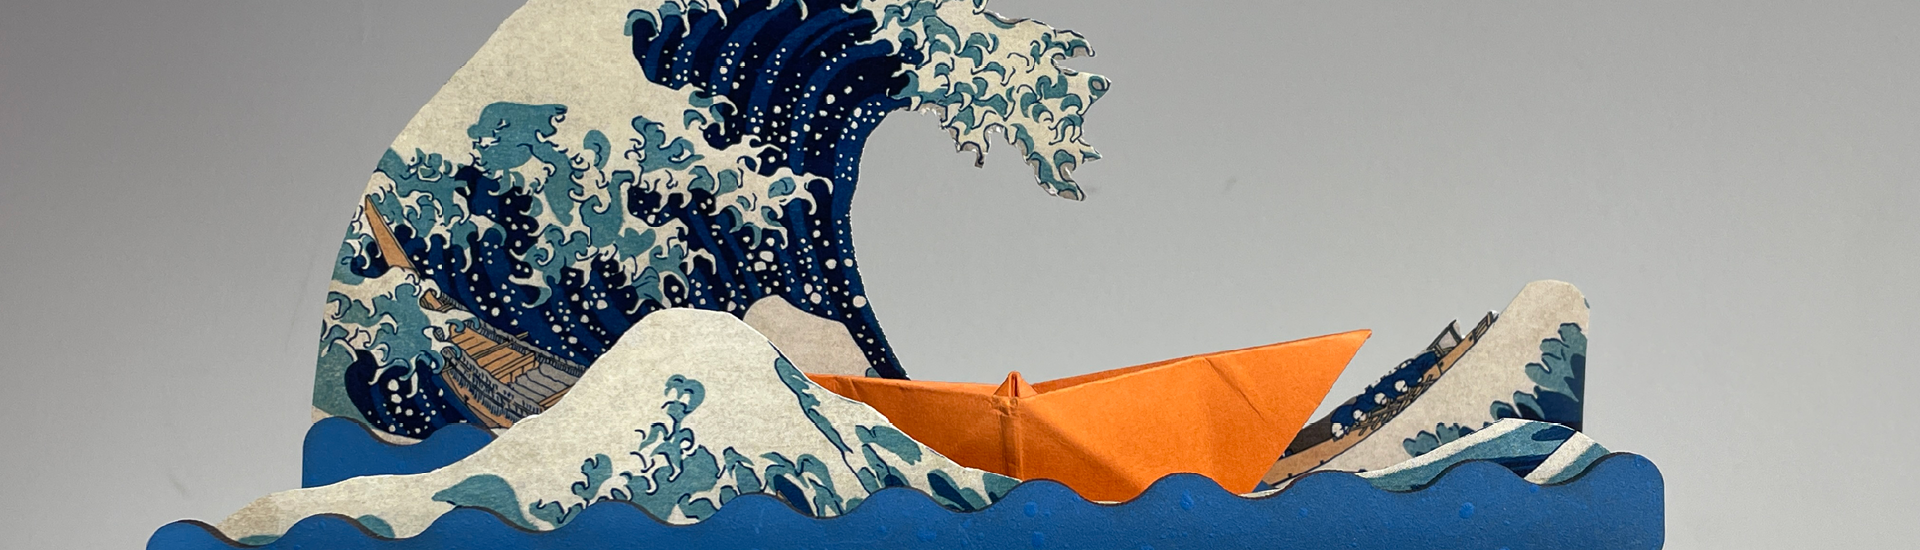 Detalhe de autômato feito na oficina infantil do Educativo da JHSP. O brinquedo mostra ondas azuis com um barco de papel laranja navegando no oceano.